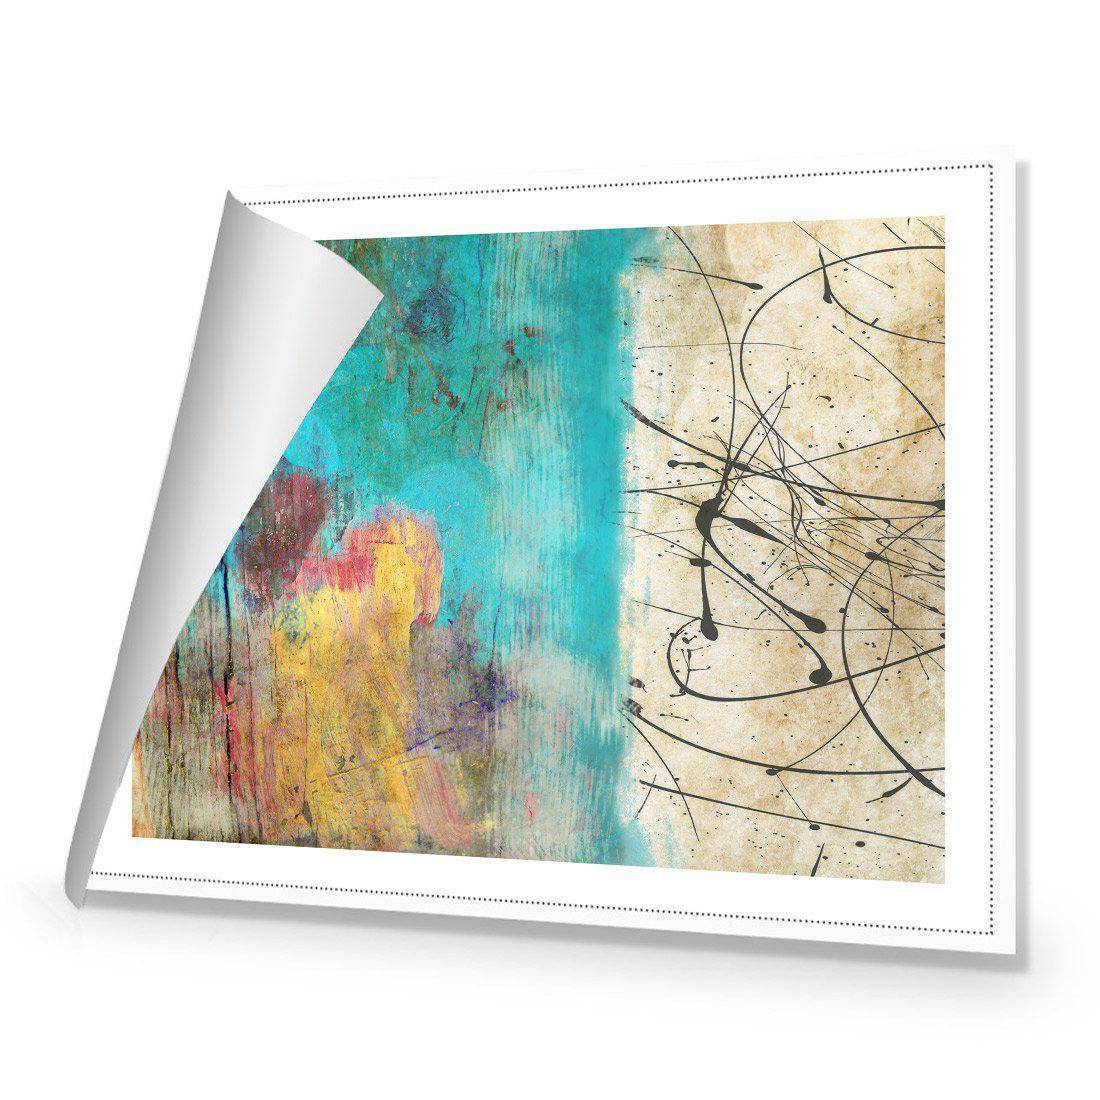 Painted Grunge Splatter Canvas Art-Canvas-Wall Art Designs-45x30cm-Rolled Canvas-Wall Art Designs